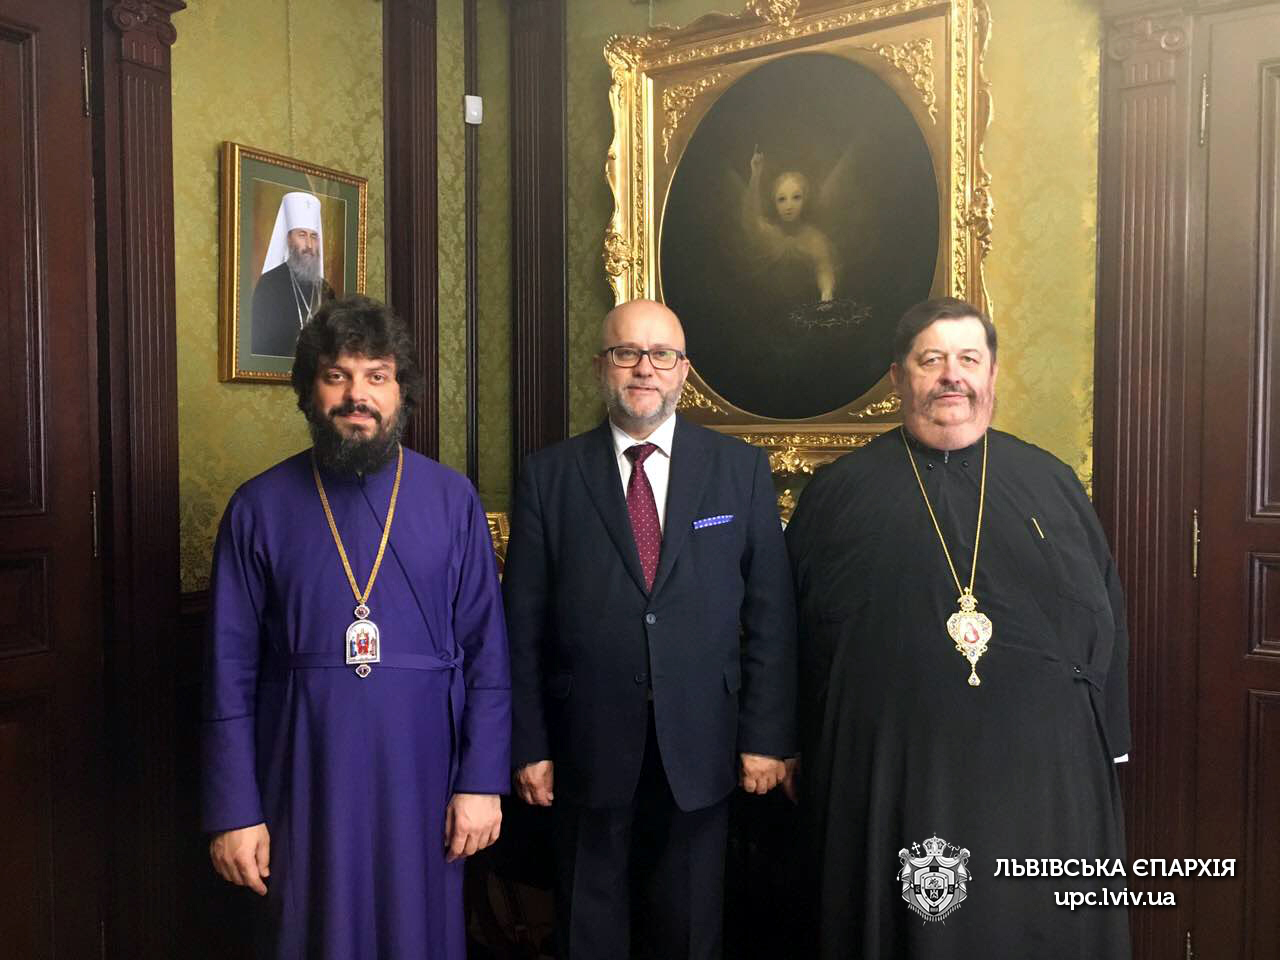  Єпископ Філарет зустрівся з Генеральним консулом Республіки Польща у Львові